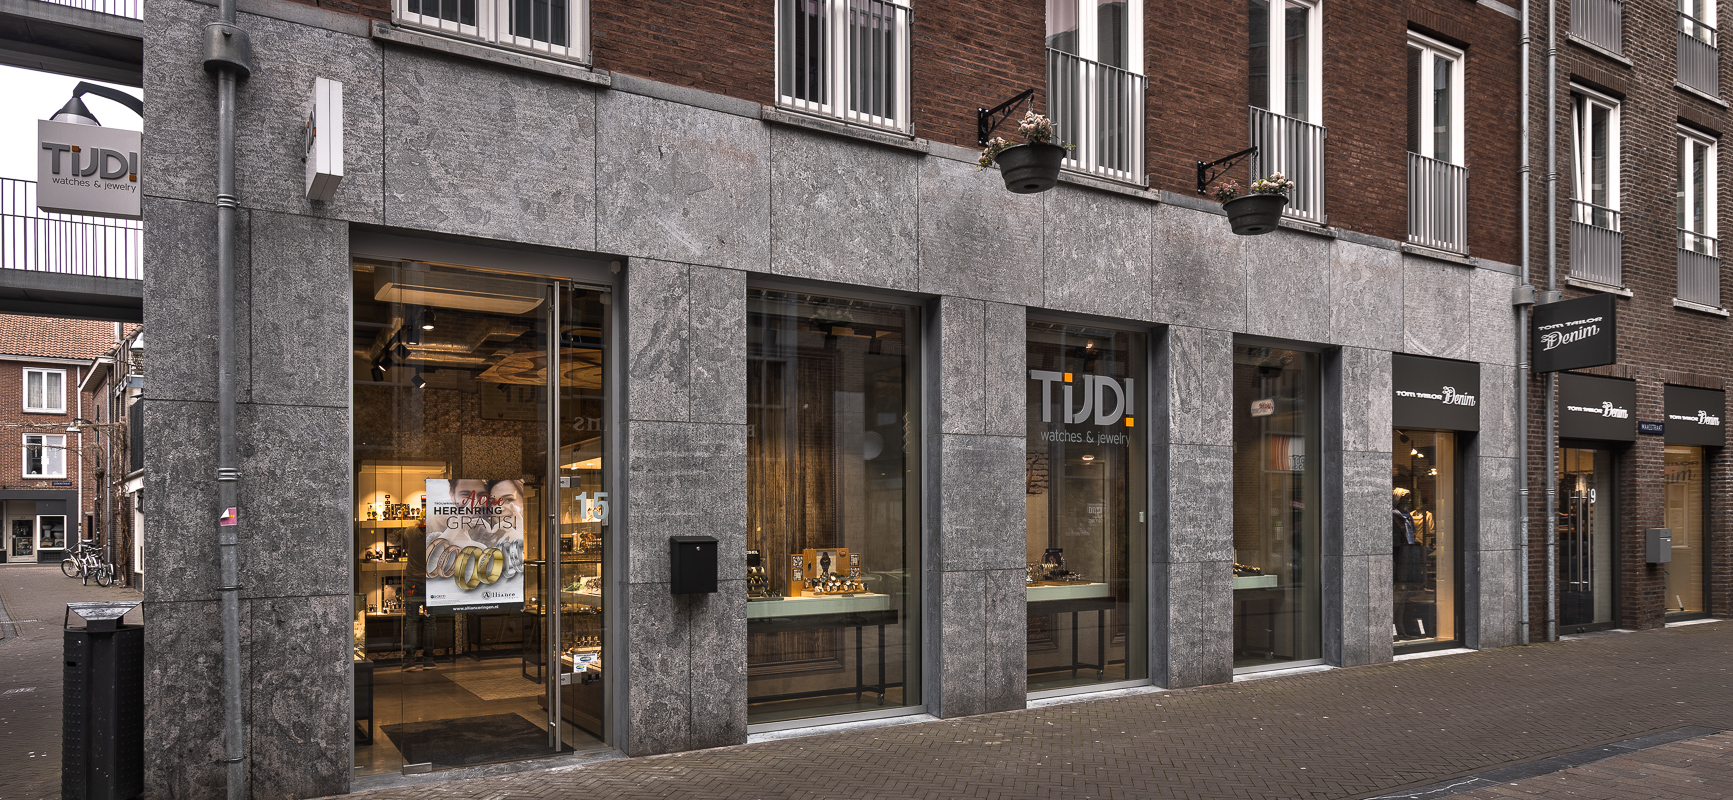 Tijd! Watches & Jewelry | Venlo (NL) - Schmuck